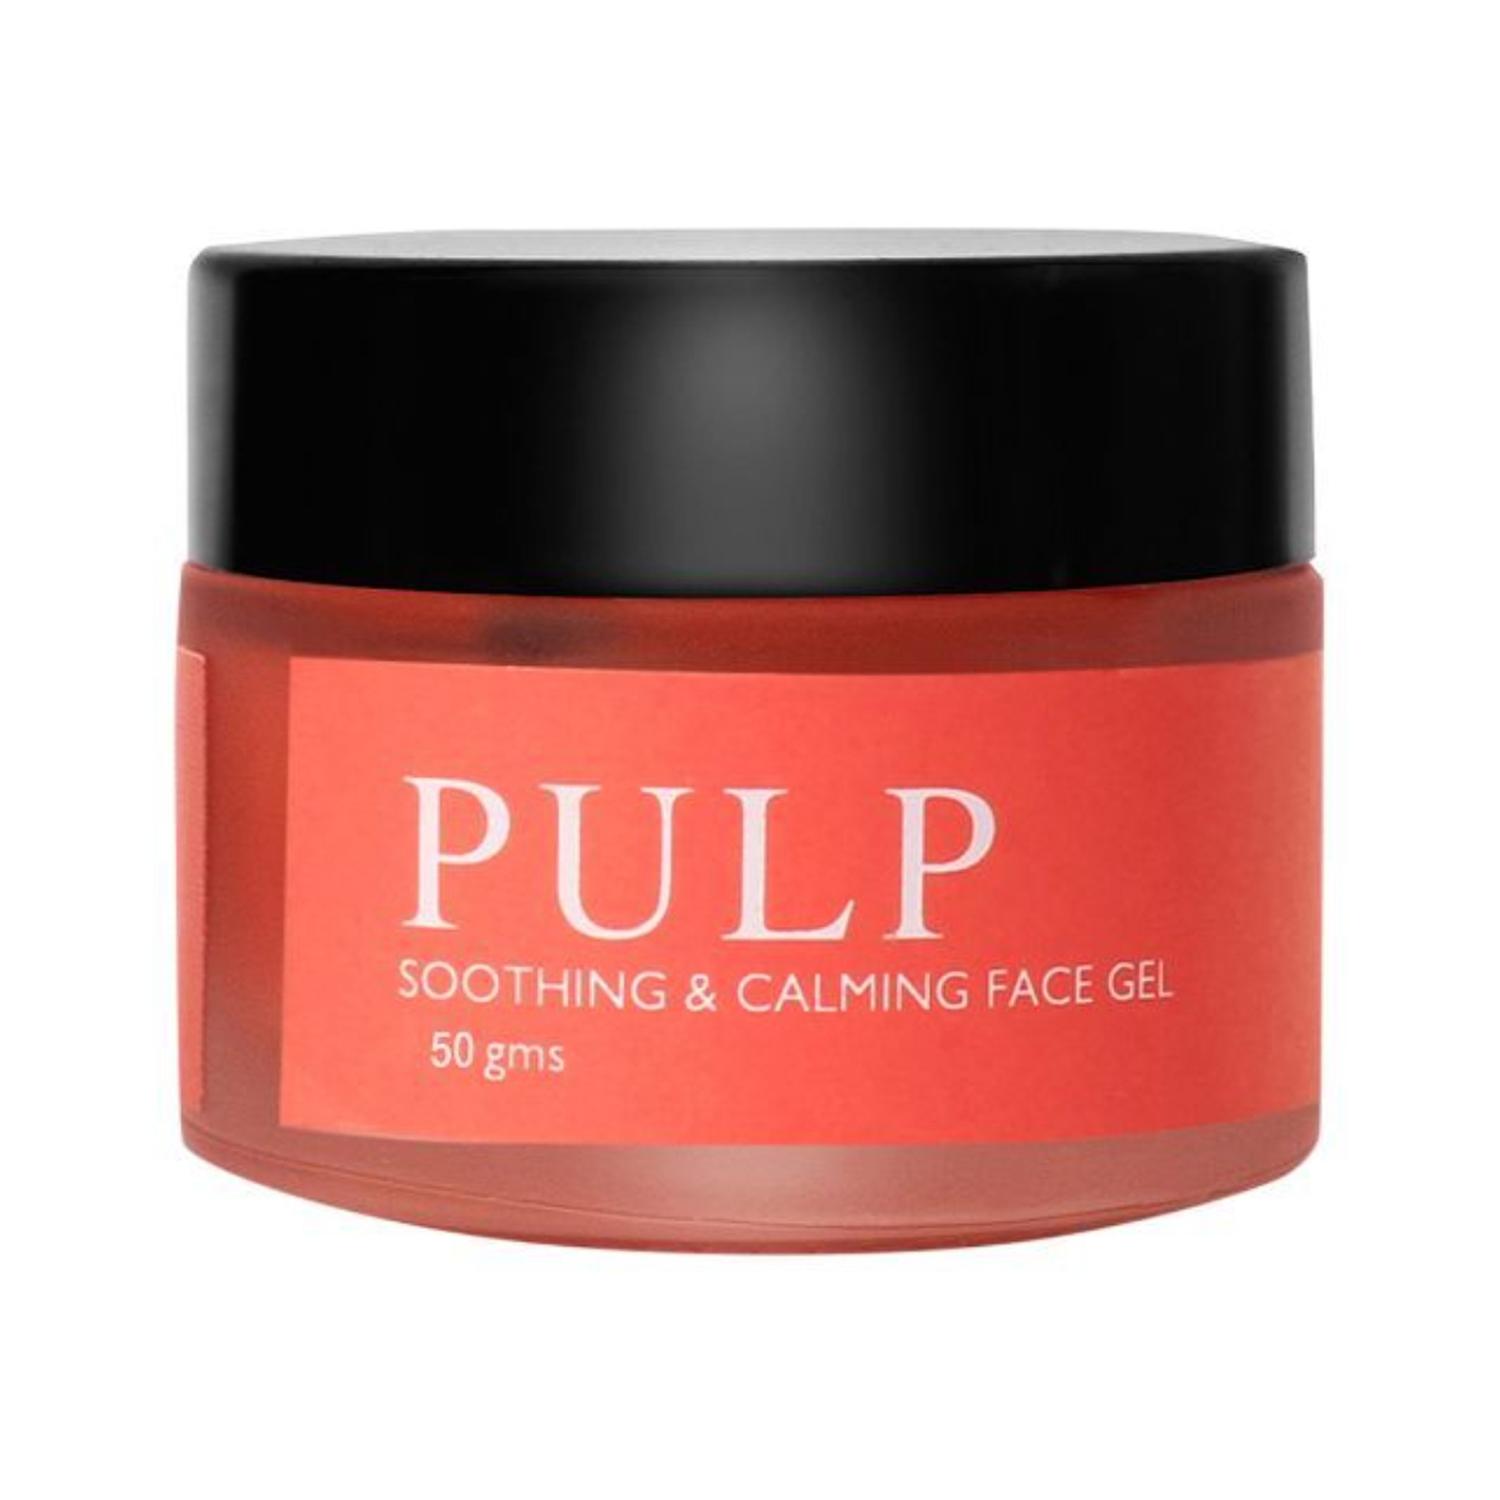 enn pulp soothing & calming face gel (50g)